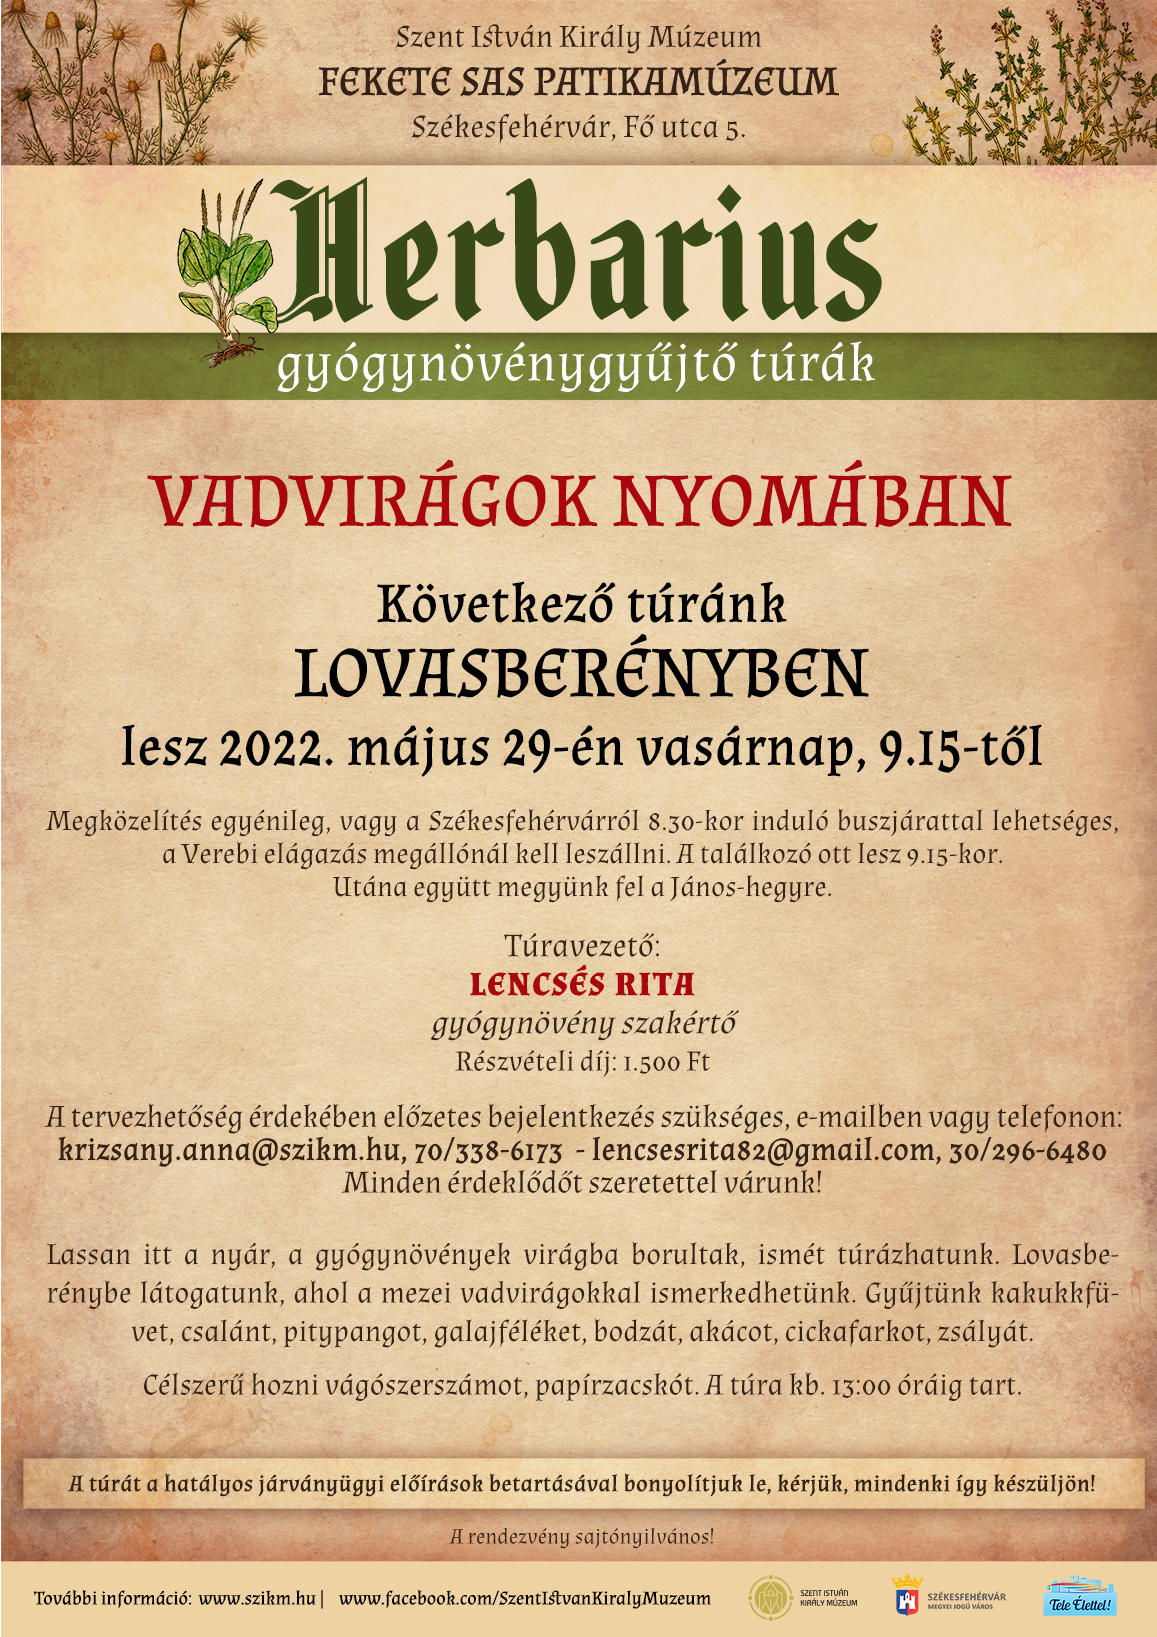 Lovasberényben folytatódnak vasárnap a Herbarius túrák